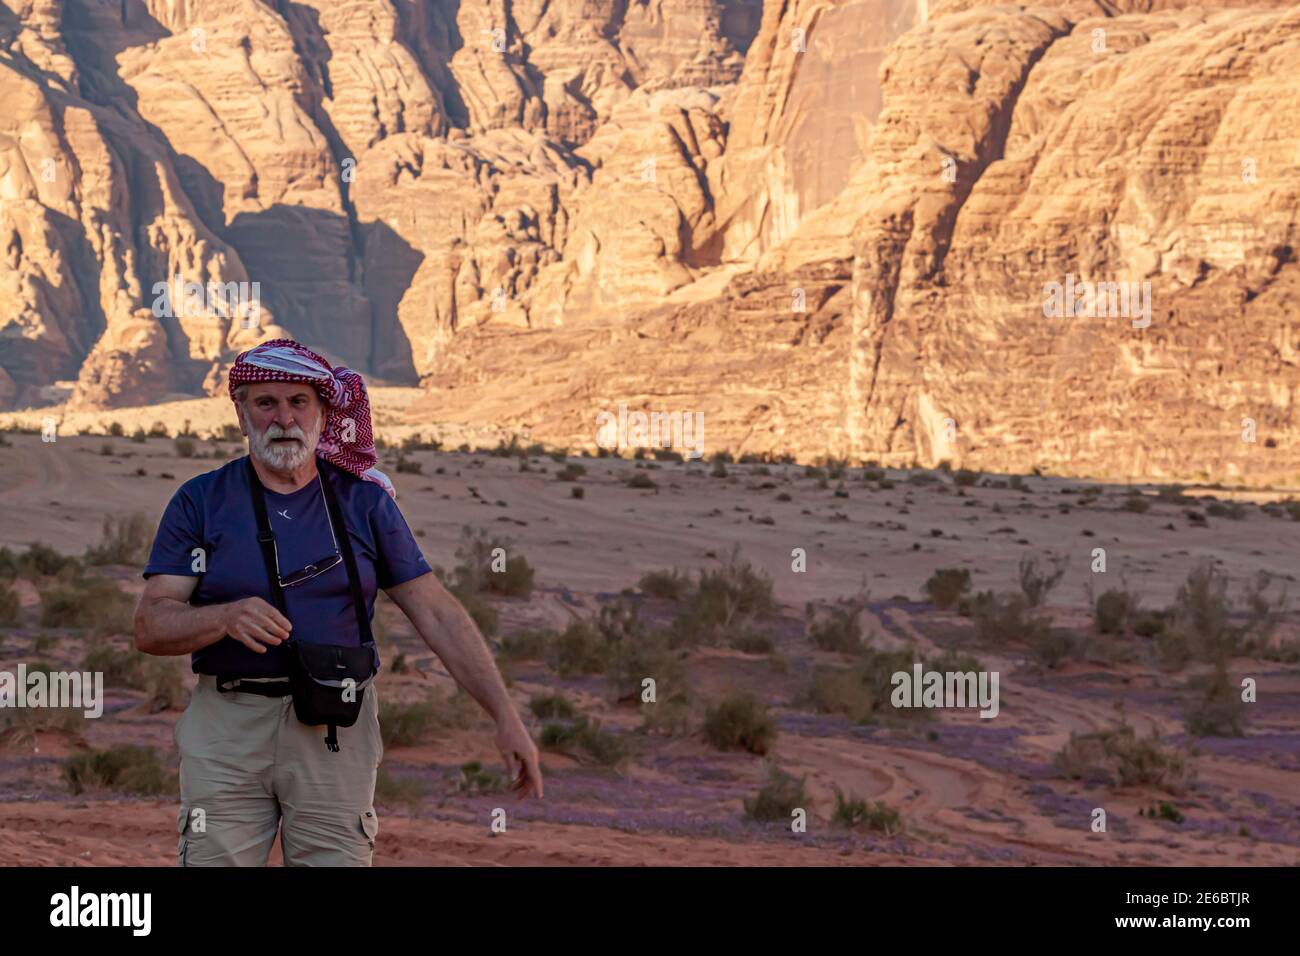 Wadi Rum Desert, Jordanie 03.31.2010: Un homme âgé touriste caucasien portant le keffiyeh traditionnel jordanien tour de tête est randonnée seule dans le désert. Banque D'Images